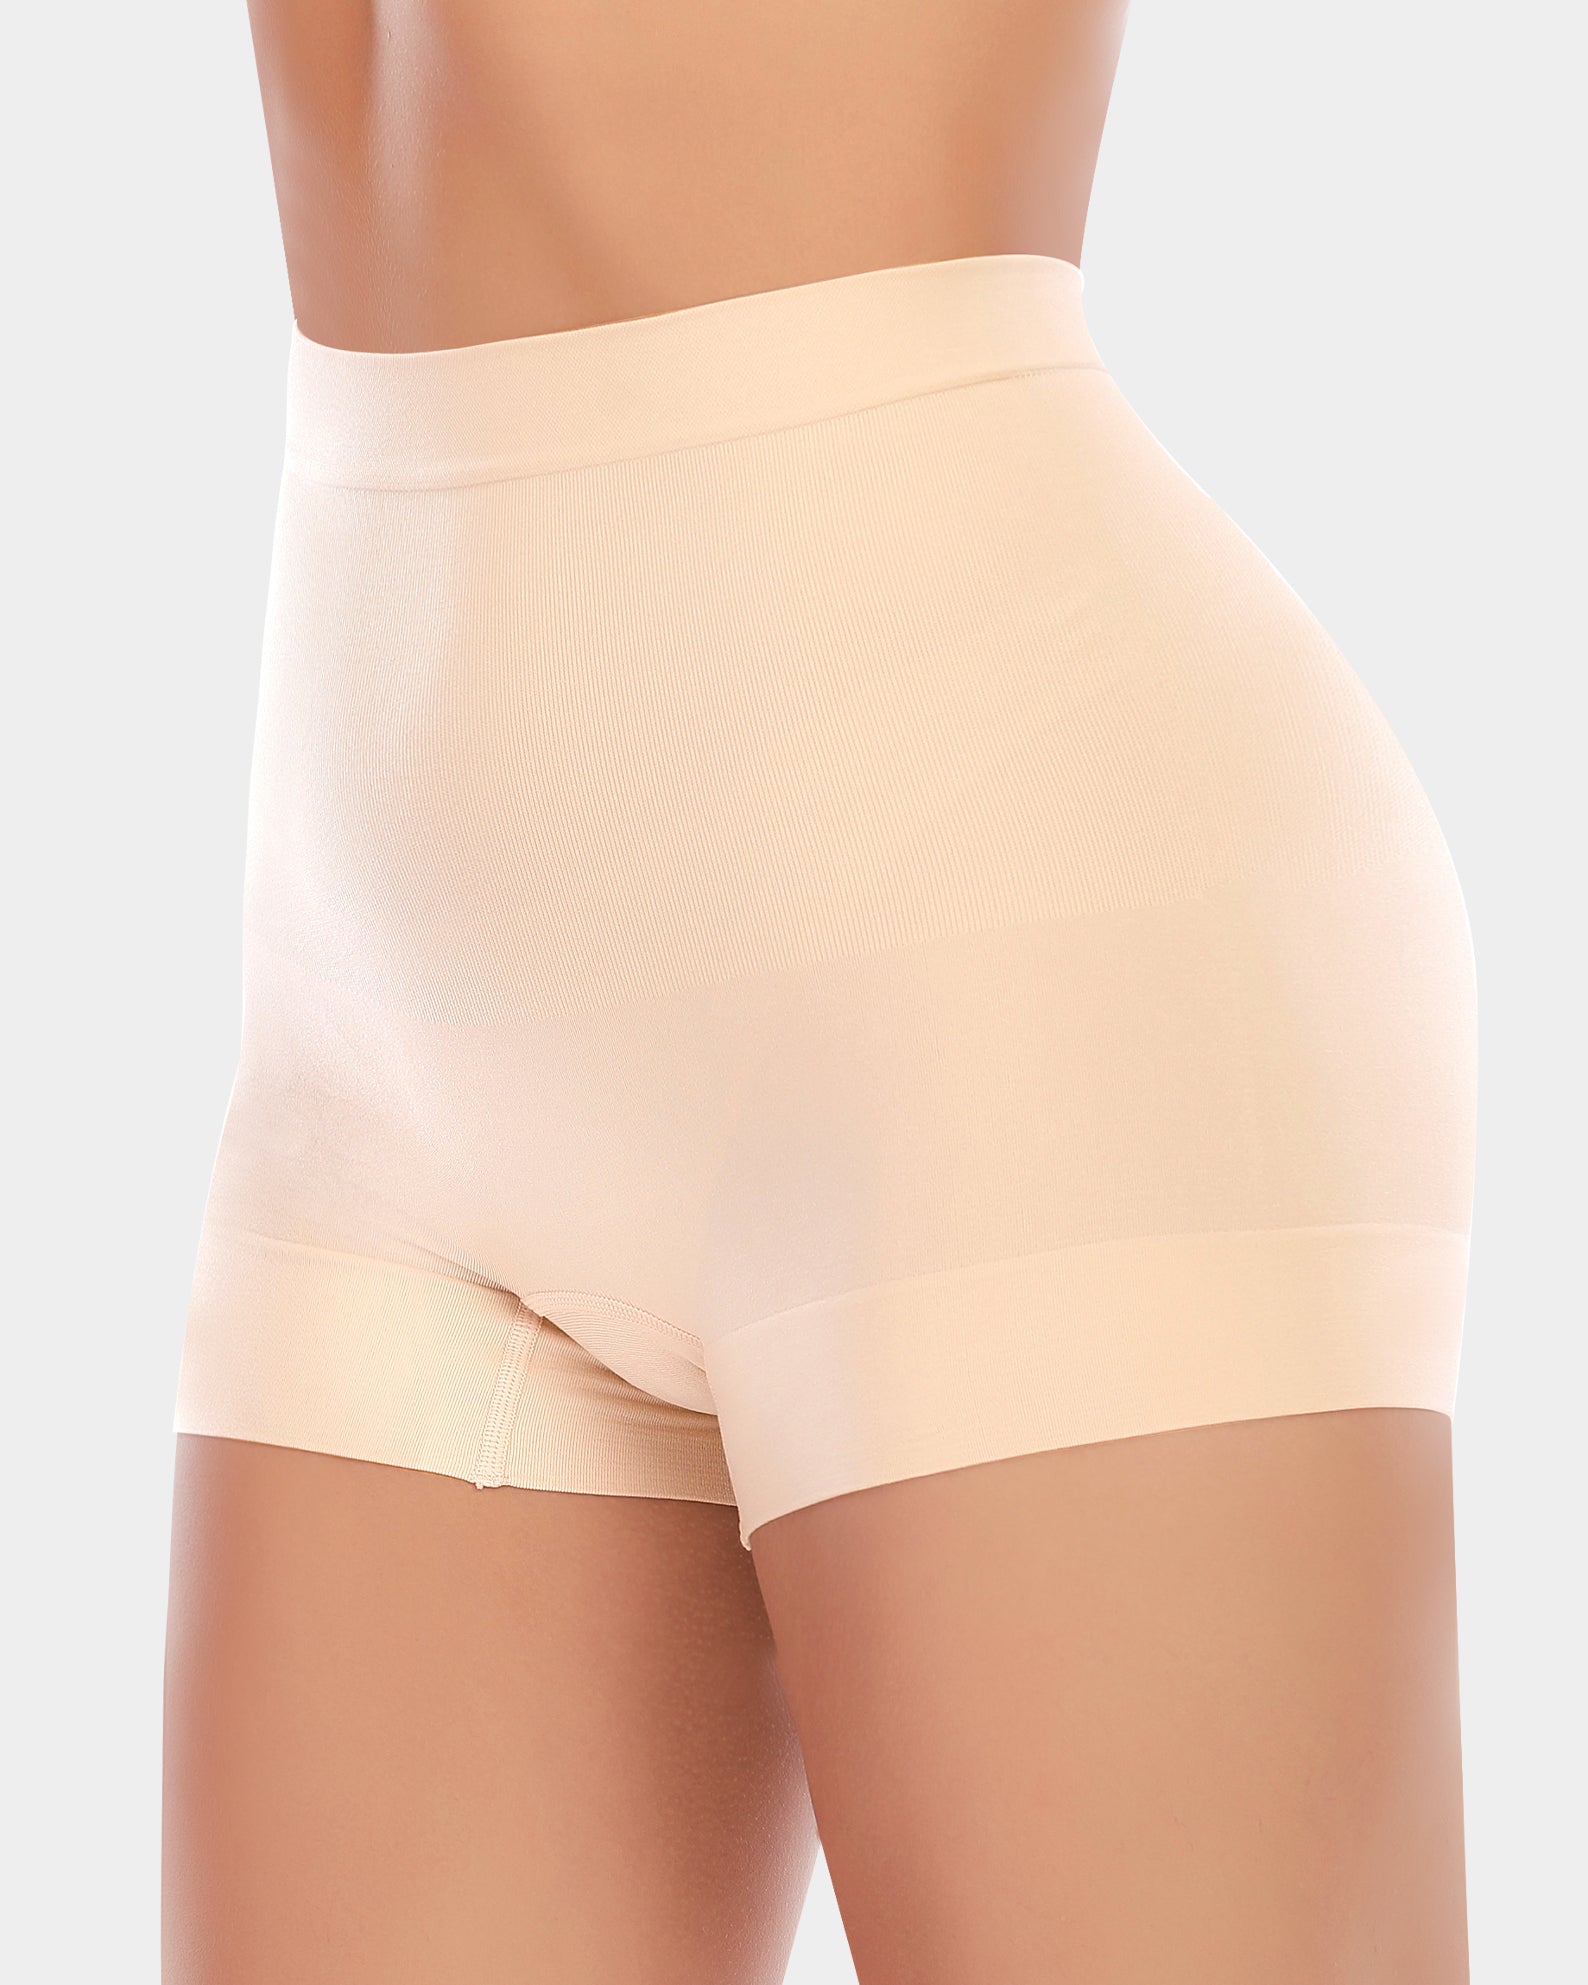 Women Seamless Compression Shorts High Waist Underwear Tummy